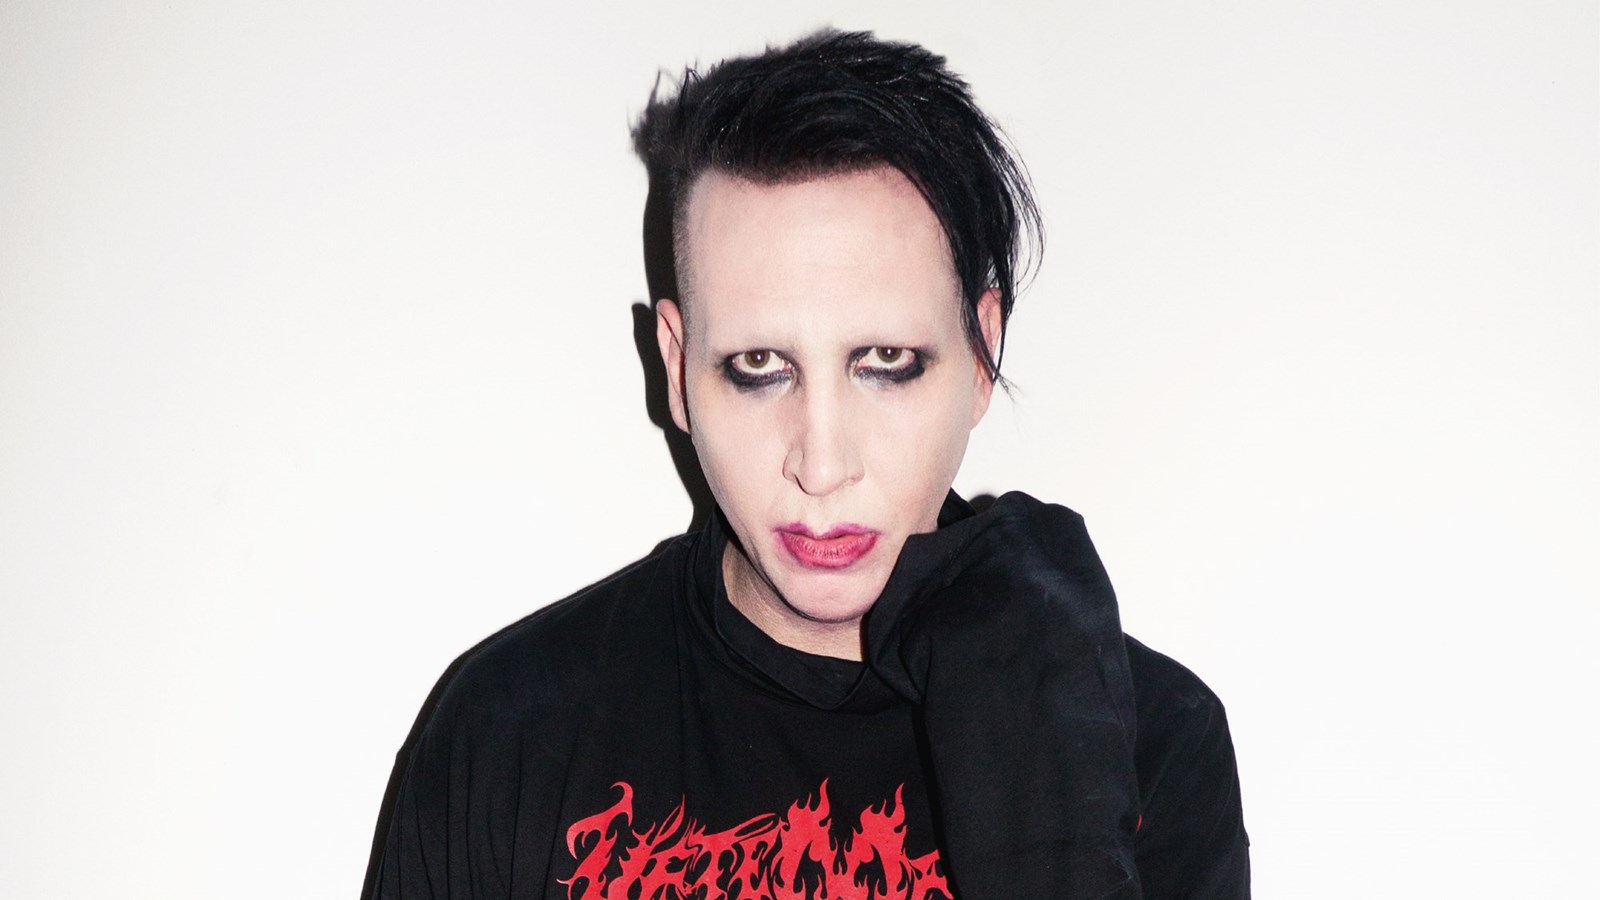 Marilyn Manson es el líder de clan de monjas dominatrix en su nuevo video. Cusica plus.